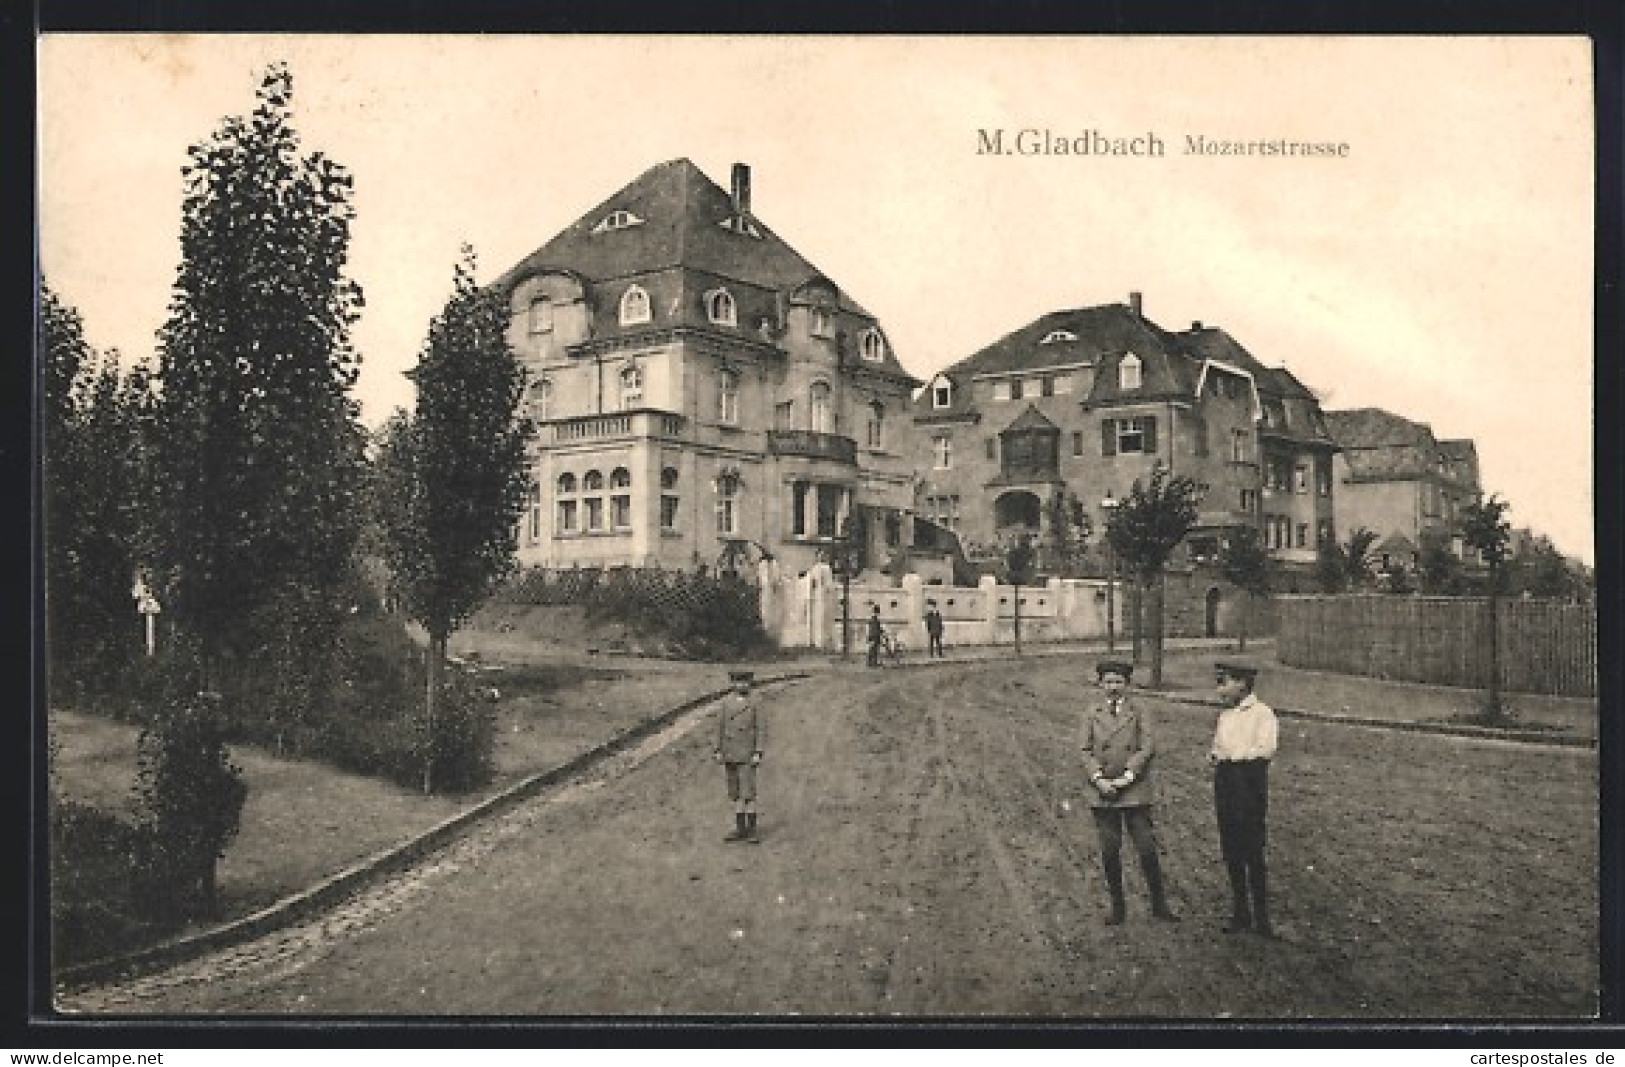 AK Mönchengladbach, Knaben Auf Der Mozartstrasse  - Moenchengladbach